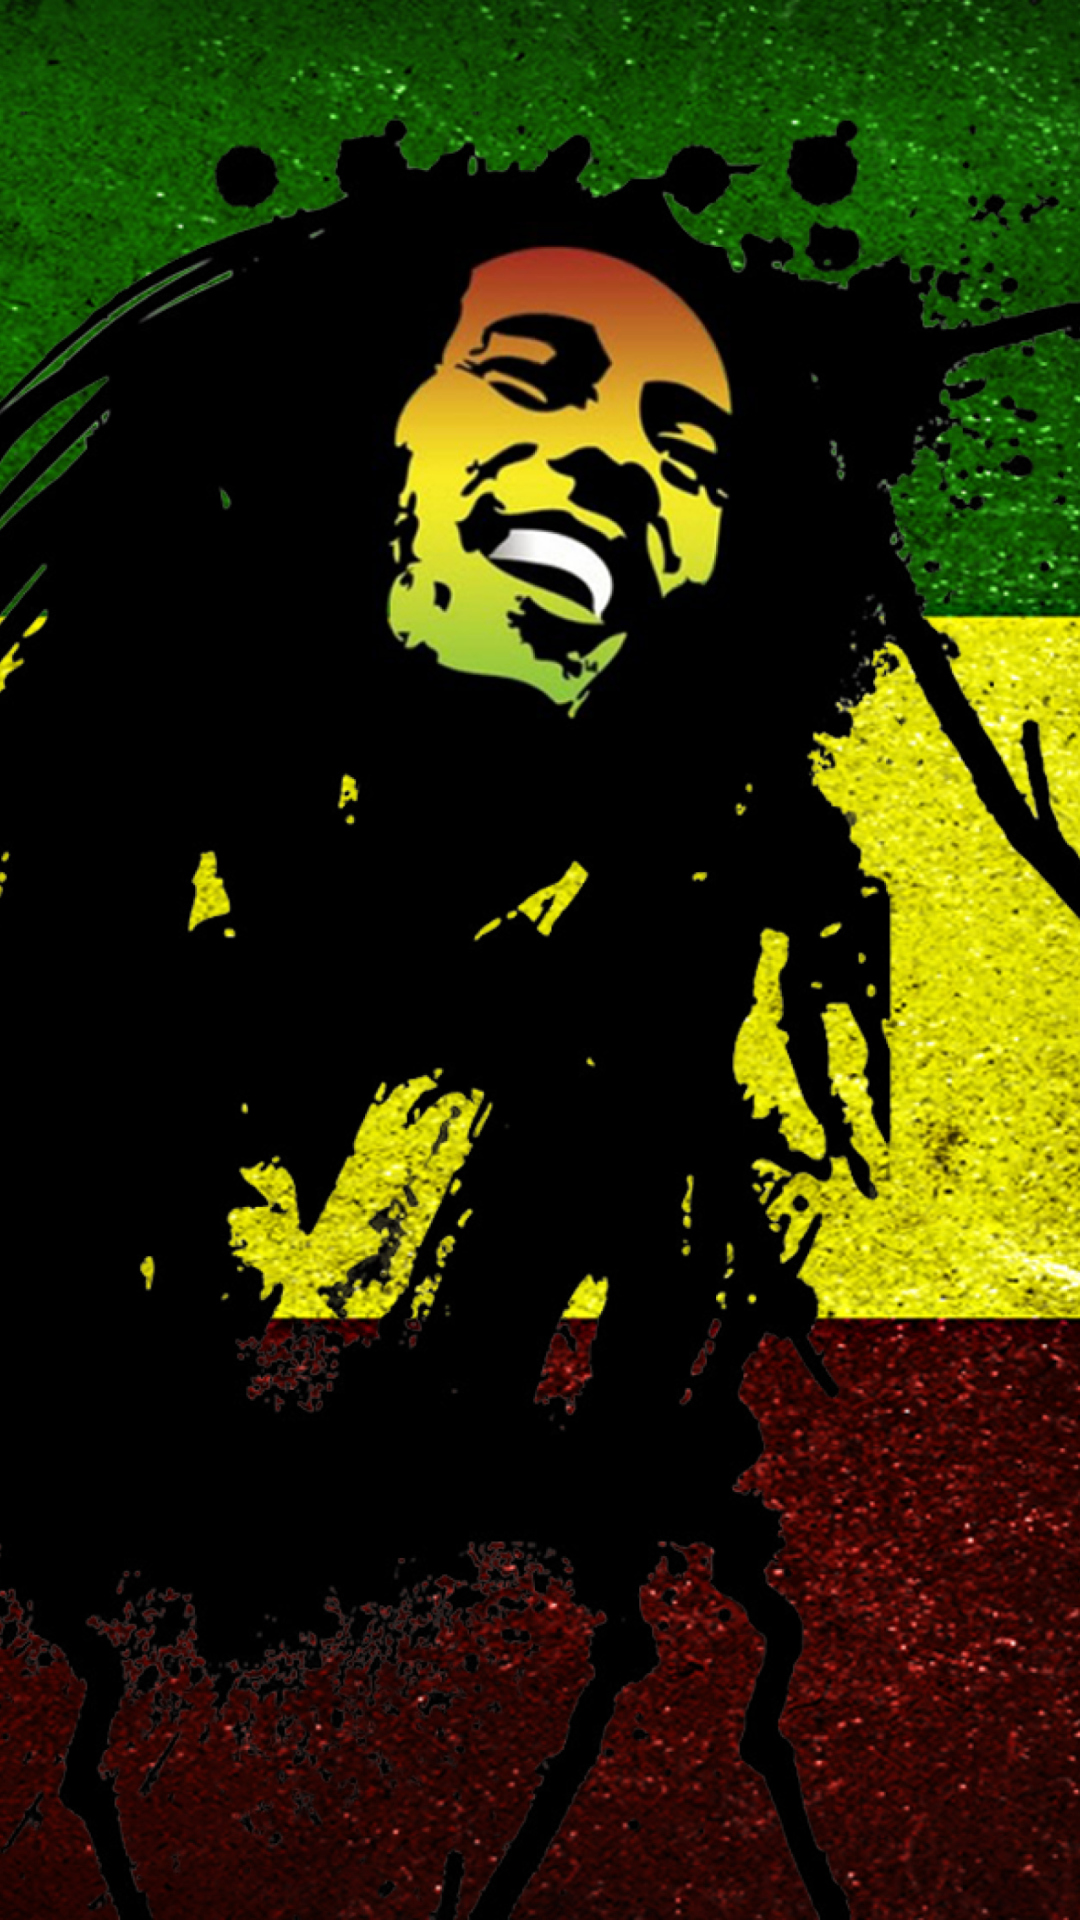 Das Bob Marley Rasta Reggae Culture Wallpaper 1080x1920